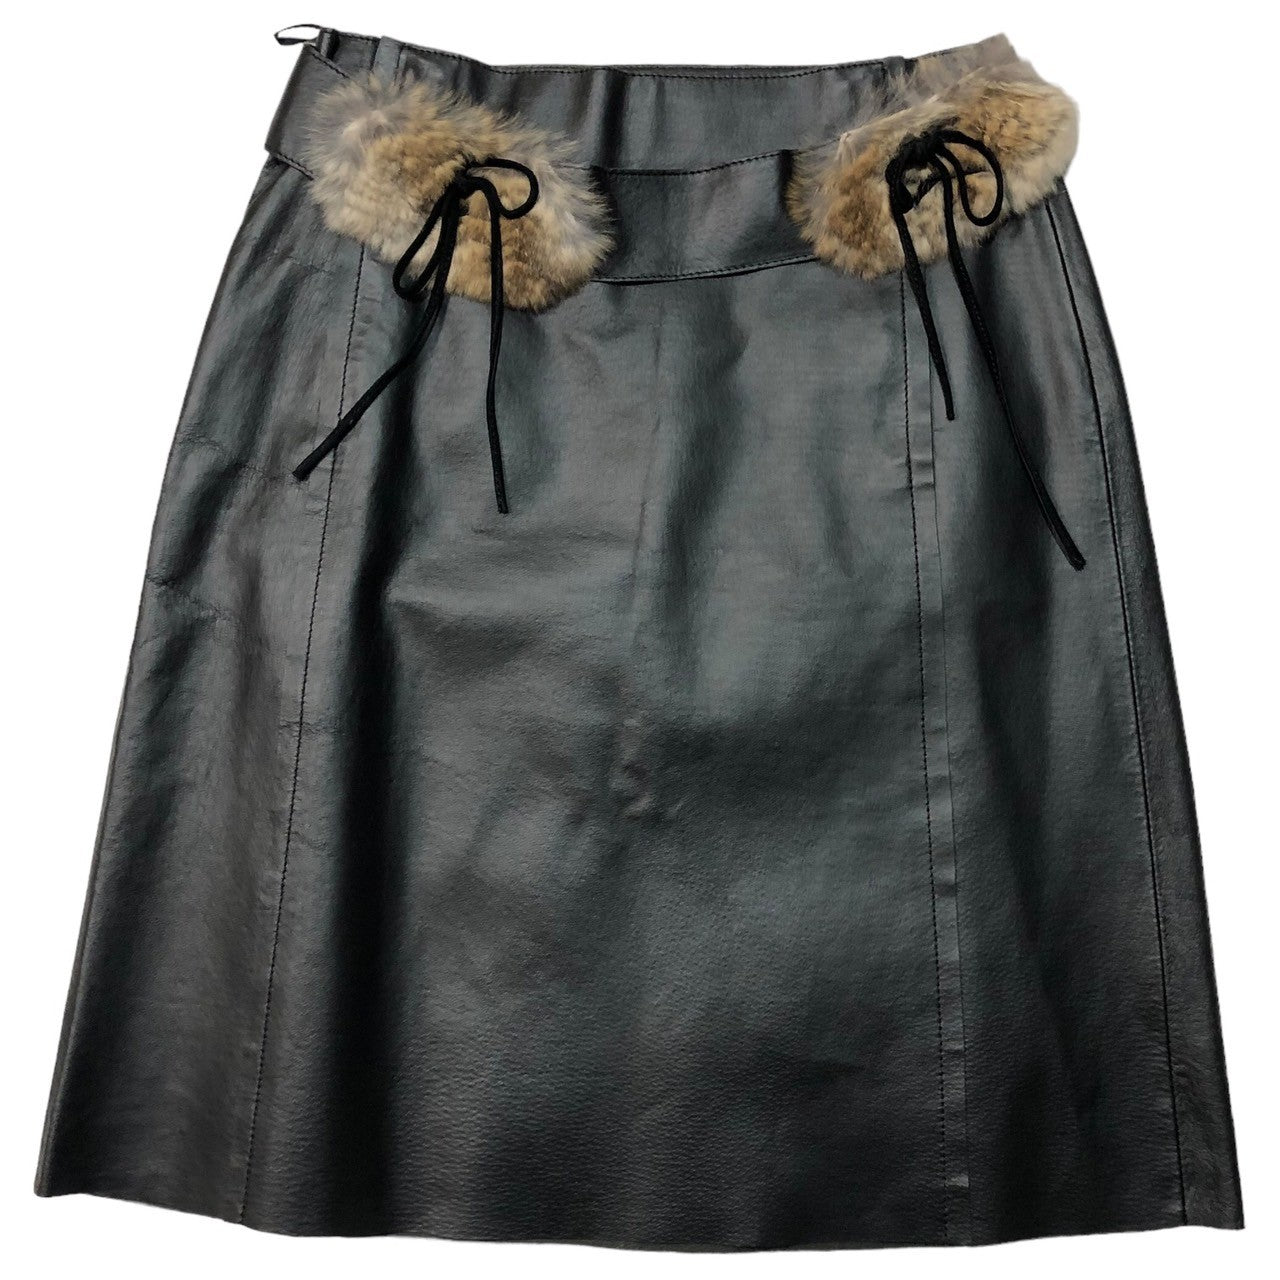 BURBERRY BLUE LABEL(バーバリーブルーレーベル) Real leather skirt with fur decoration ファー装飾 本革 スカート FLF19-611 38(M) ブラック×ベージュ